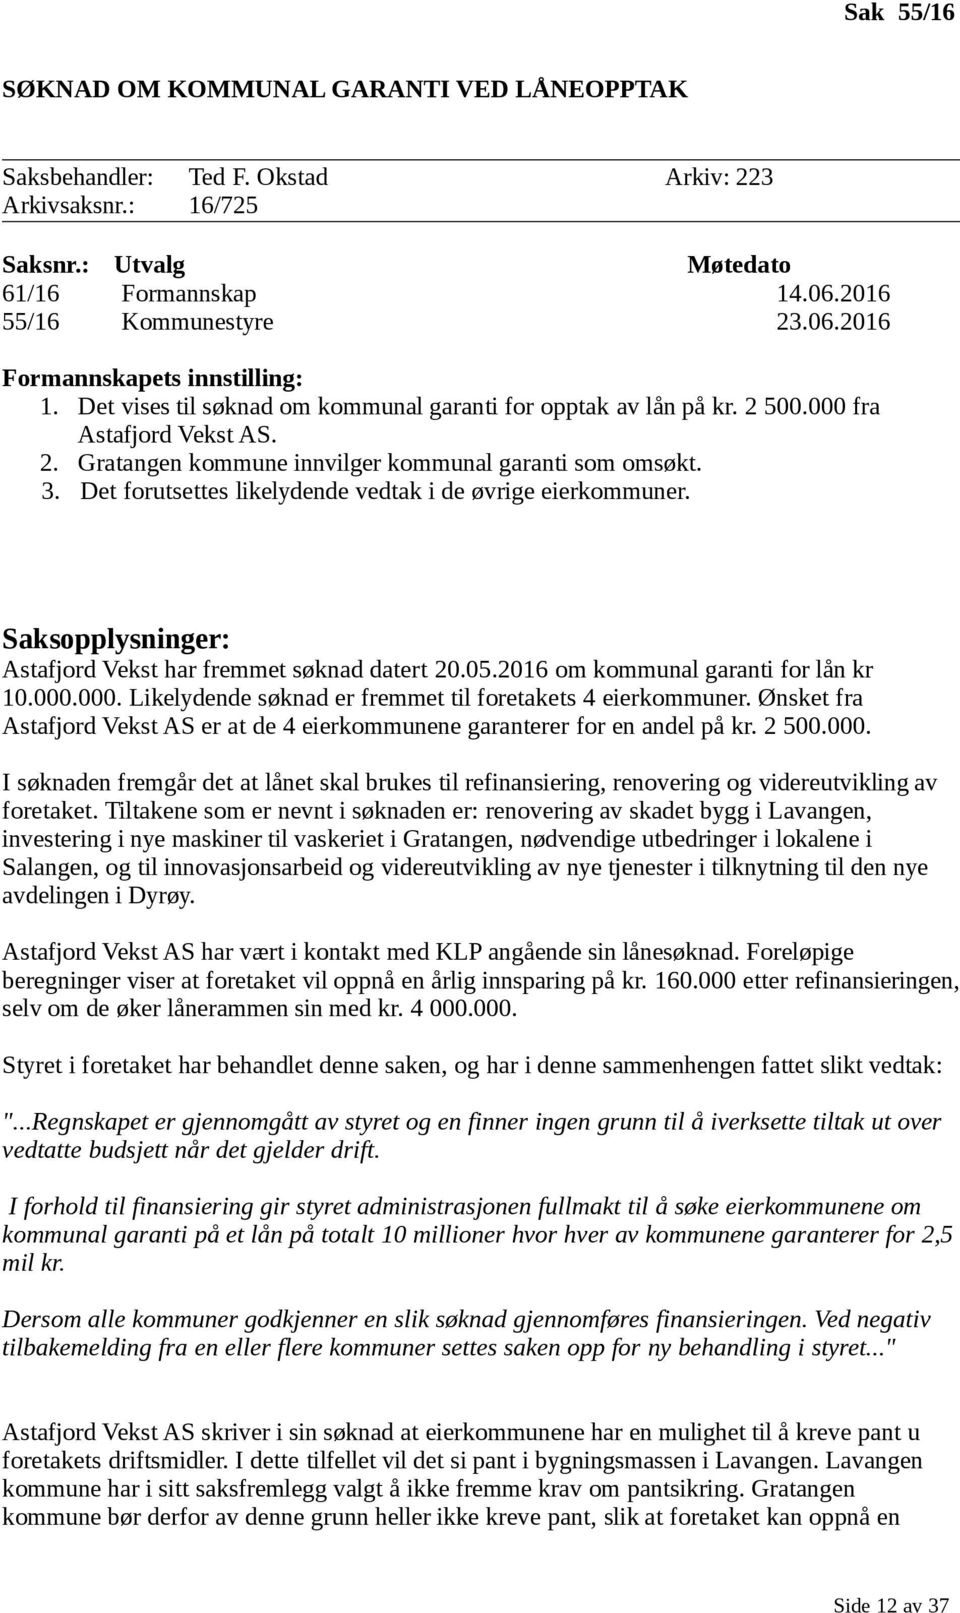 Det forutsettes likelydende vedtak i de øvrige eierkommuner. Astafjord Vekst har fremmet søknad datert 20.05.2016 om kommunal garanti for lån kr 10.000.